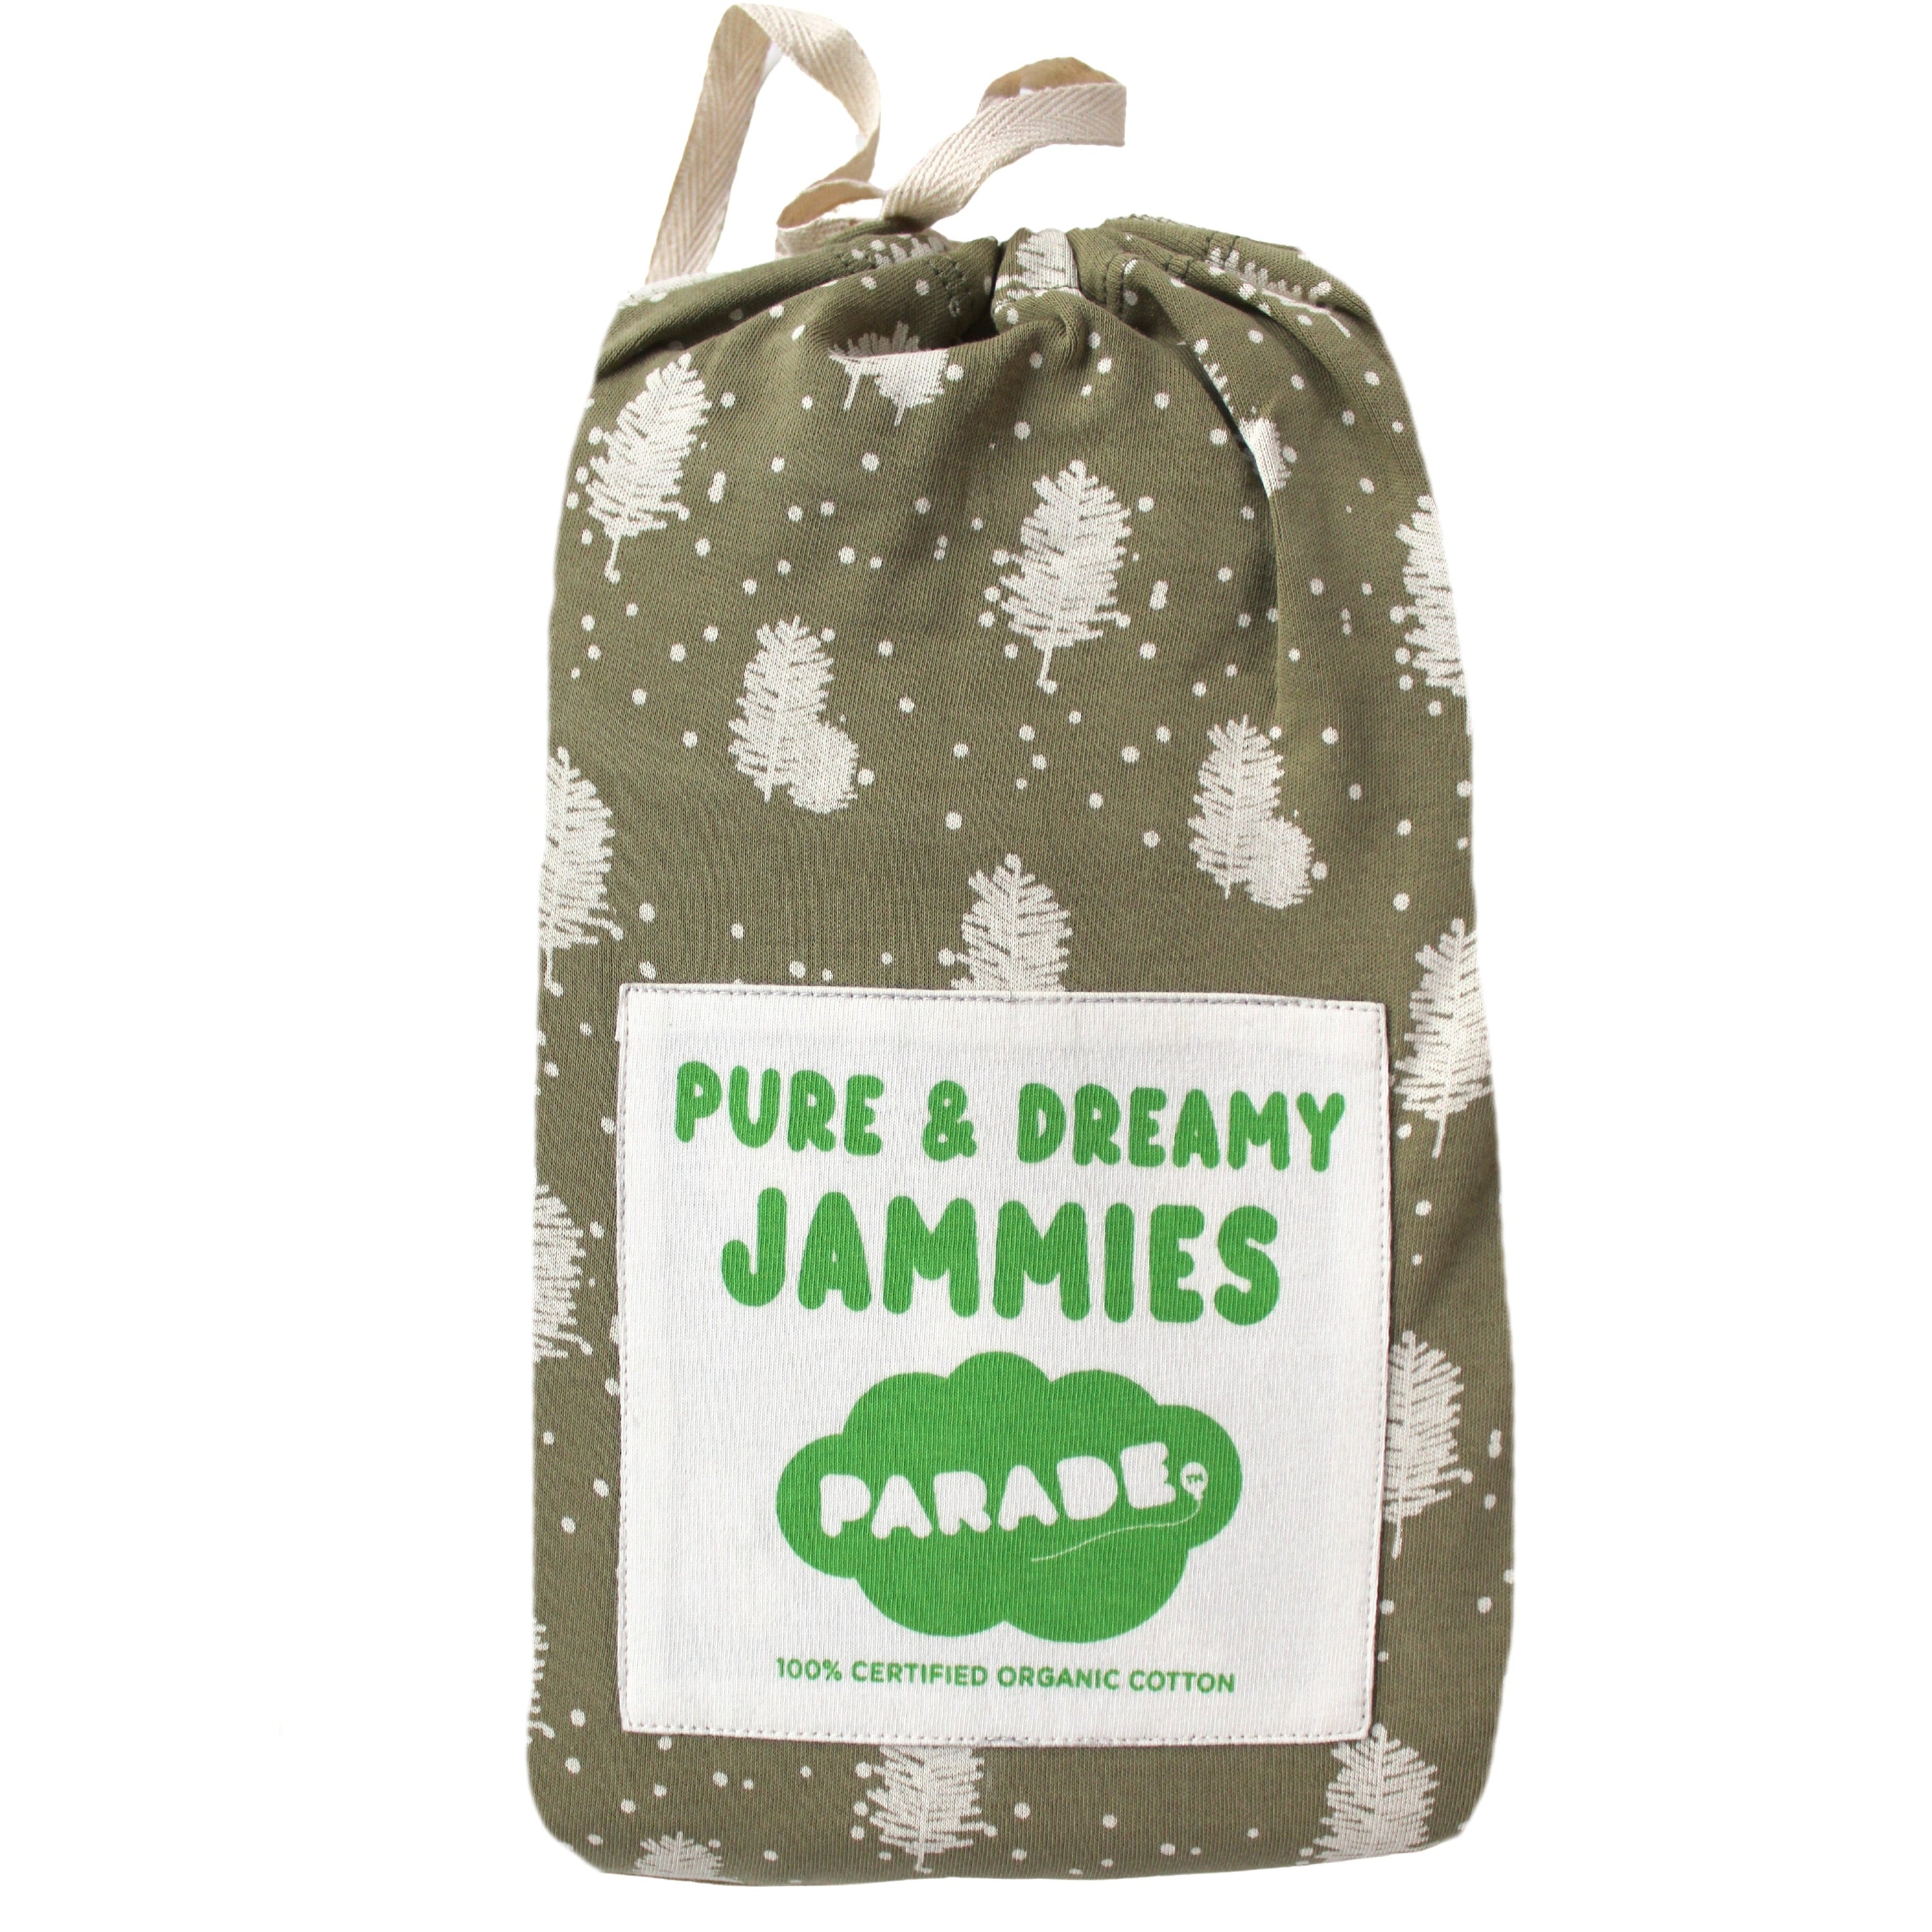 Parade Organic Pajamas – PARADE